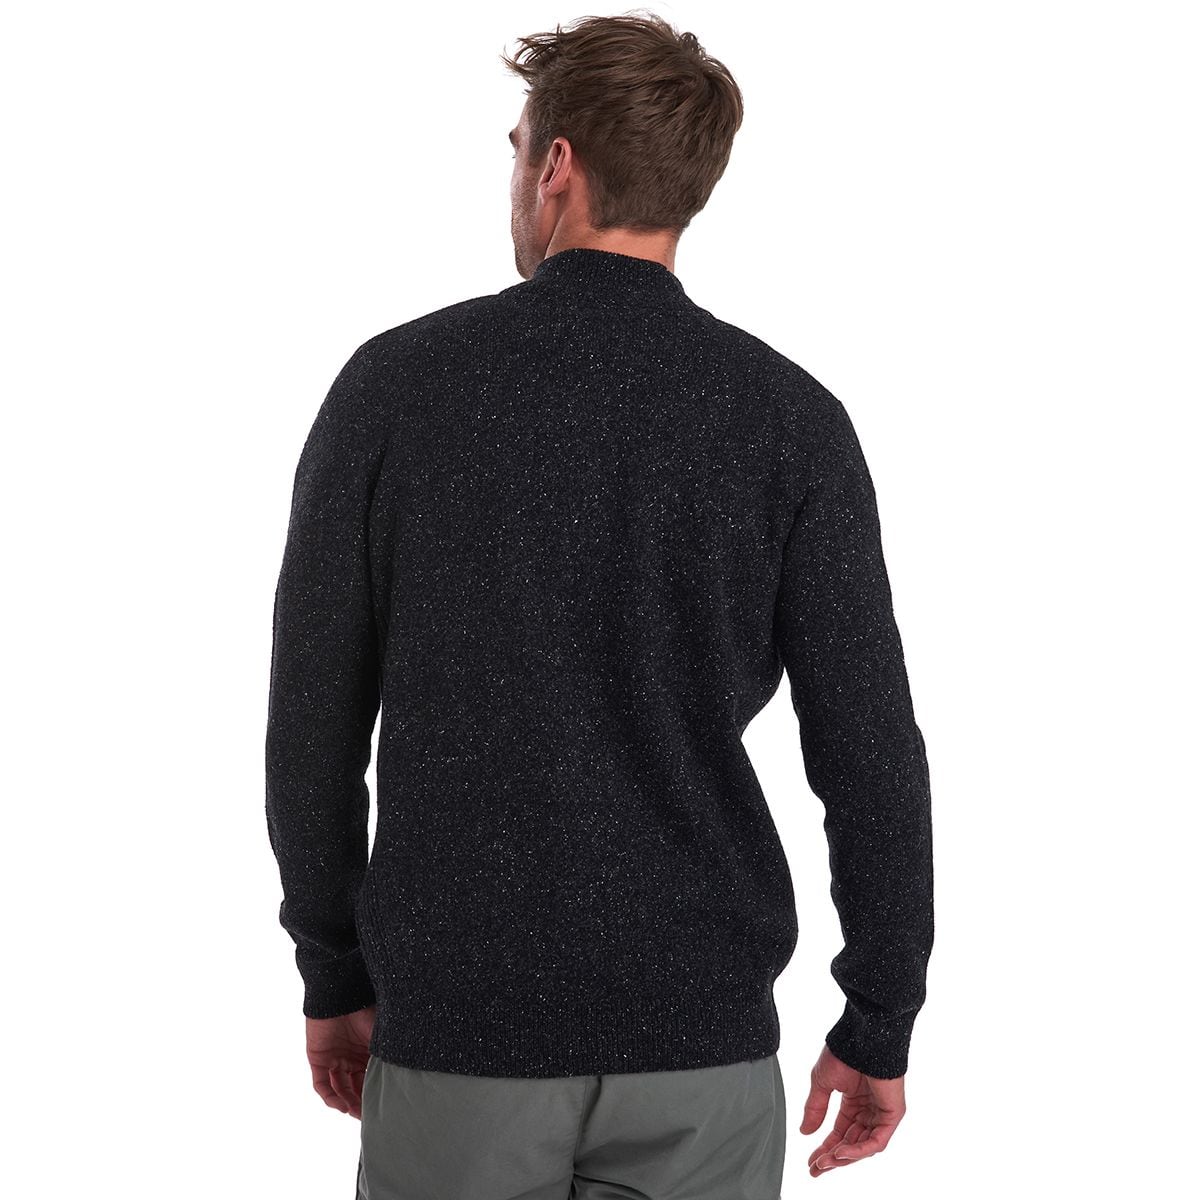 Barbour Tisbury Half-Zip Sweater - Men's - Clothing